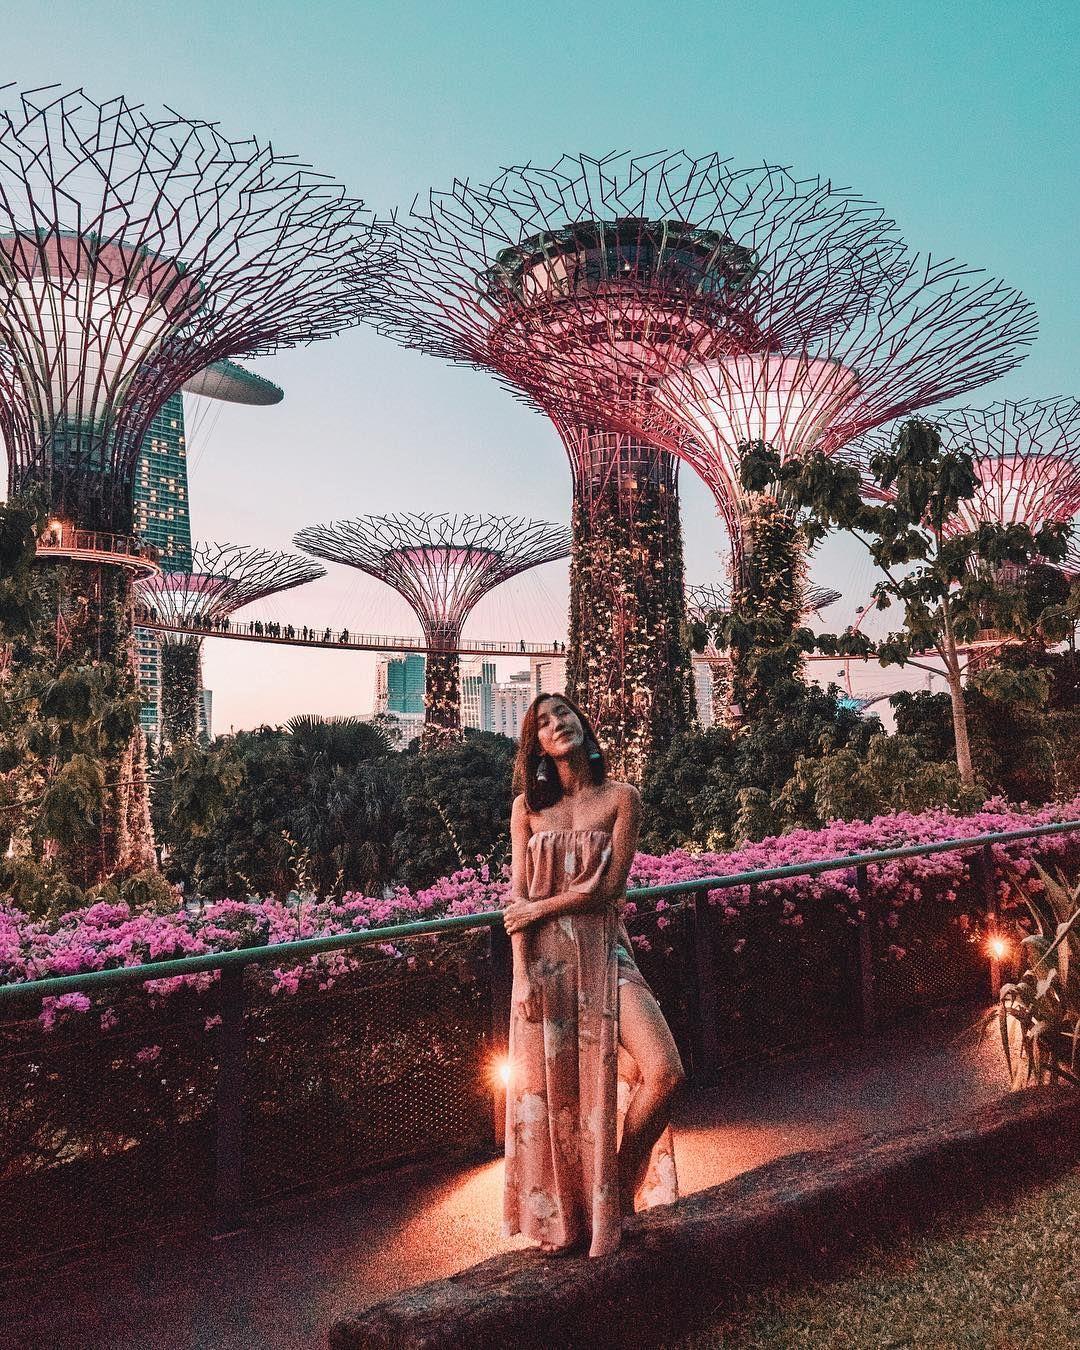 Du lịch Singapore có gì? Gardens by the Bay, thế giới thực vật đẹp như cổ tích